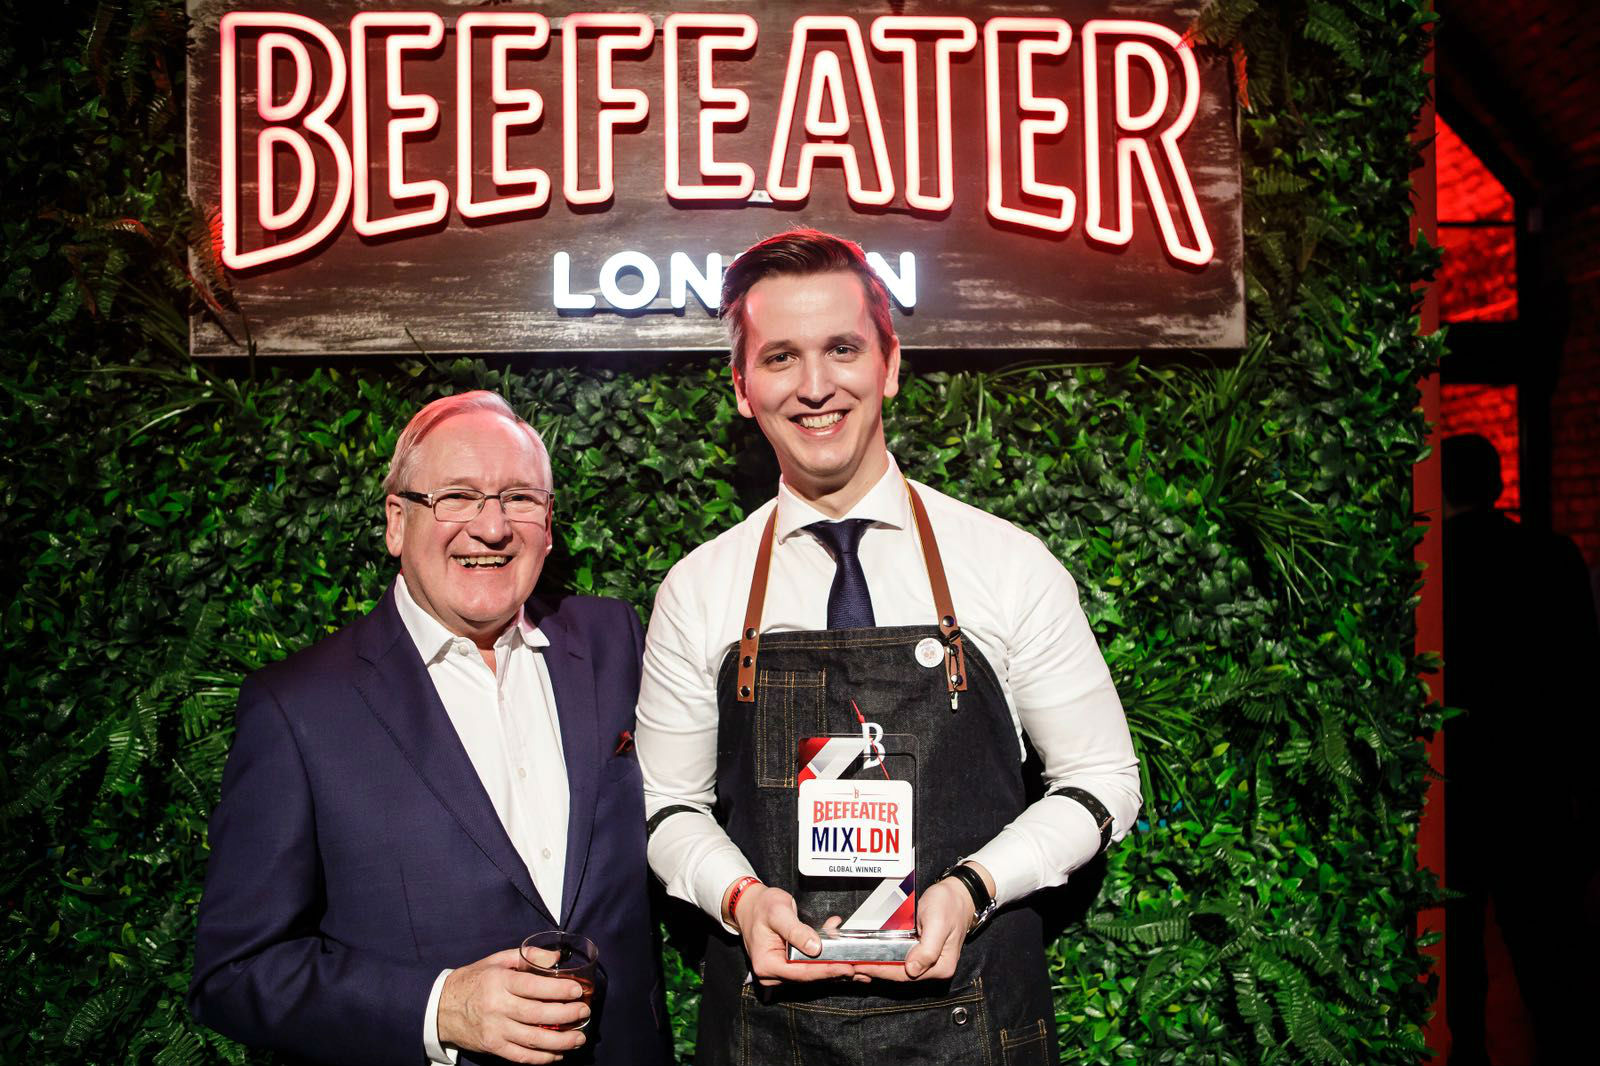 麗思酒廊調酒師 Maxim Schulte 於全球大型 氈酒錦標賽 Beefeater MIXLDN 7 中勇奪全球 冠軍殊榮